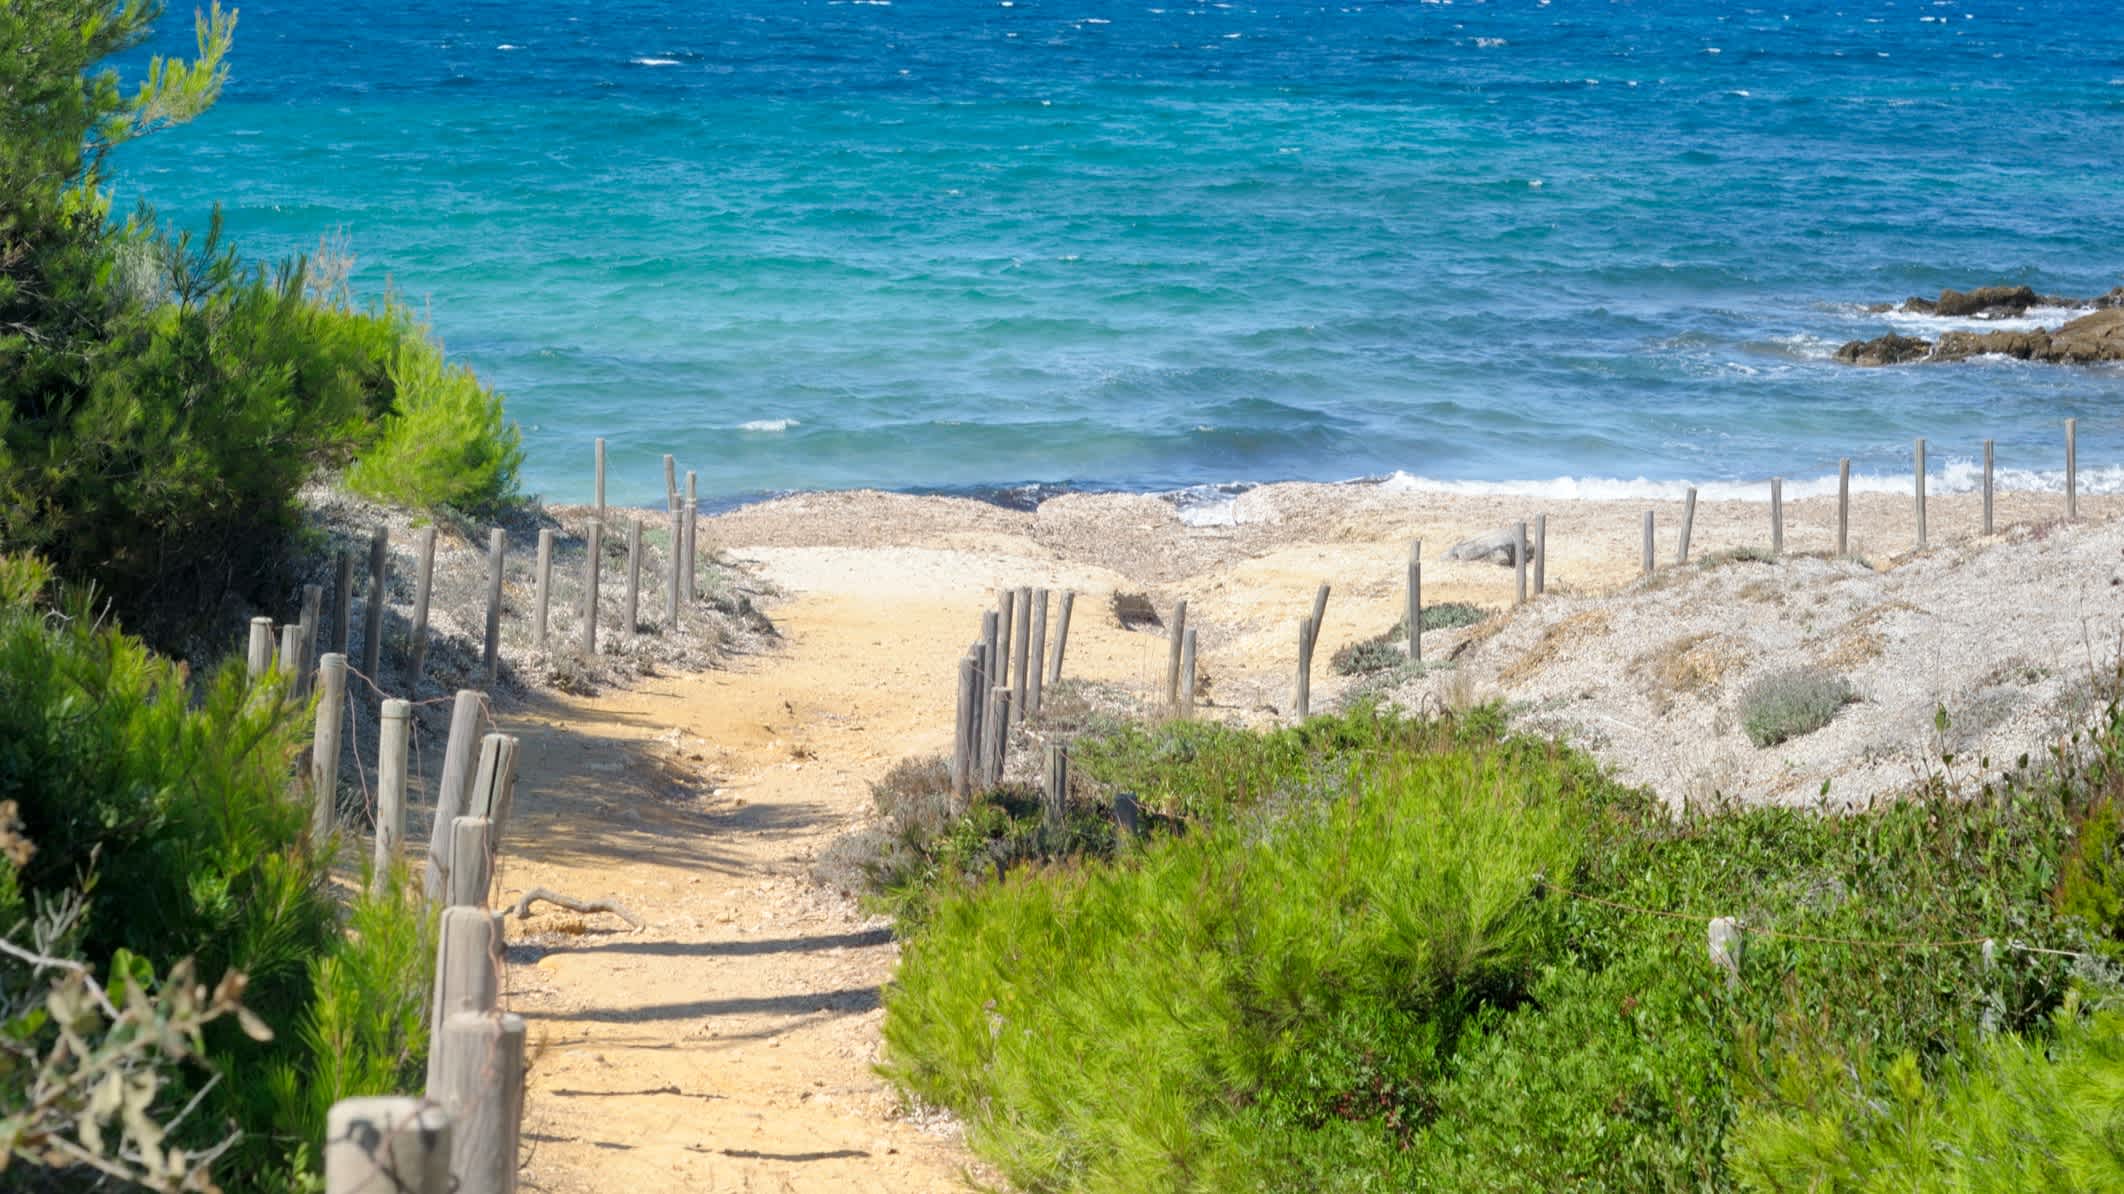 Sentier de sable bordé de végétation menant sur la petite plage sur l'île de Porquerolles, Côte d'Azur, France

